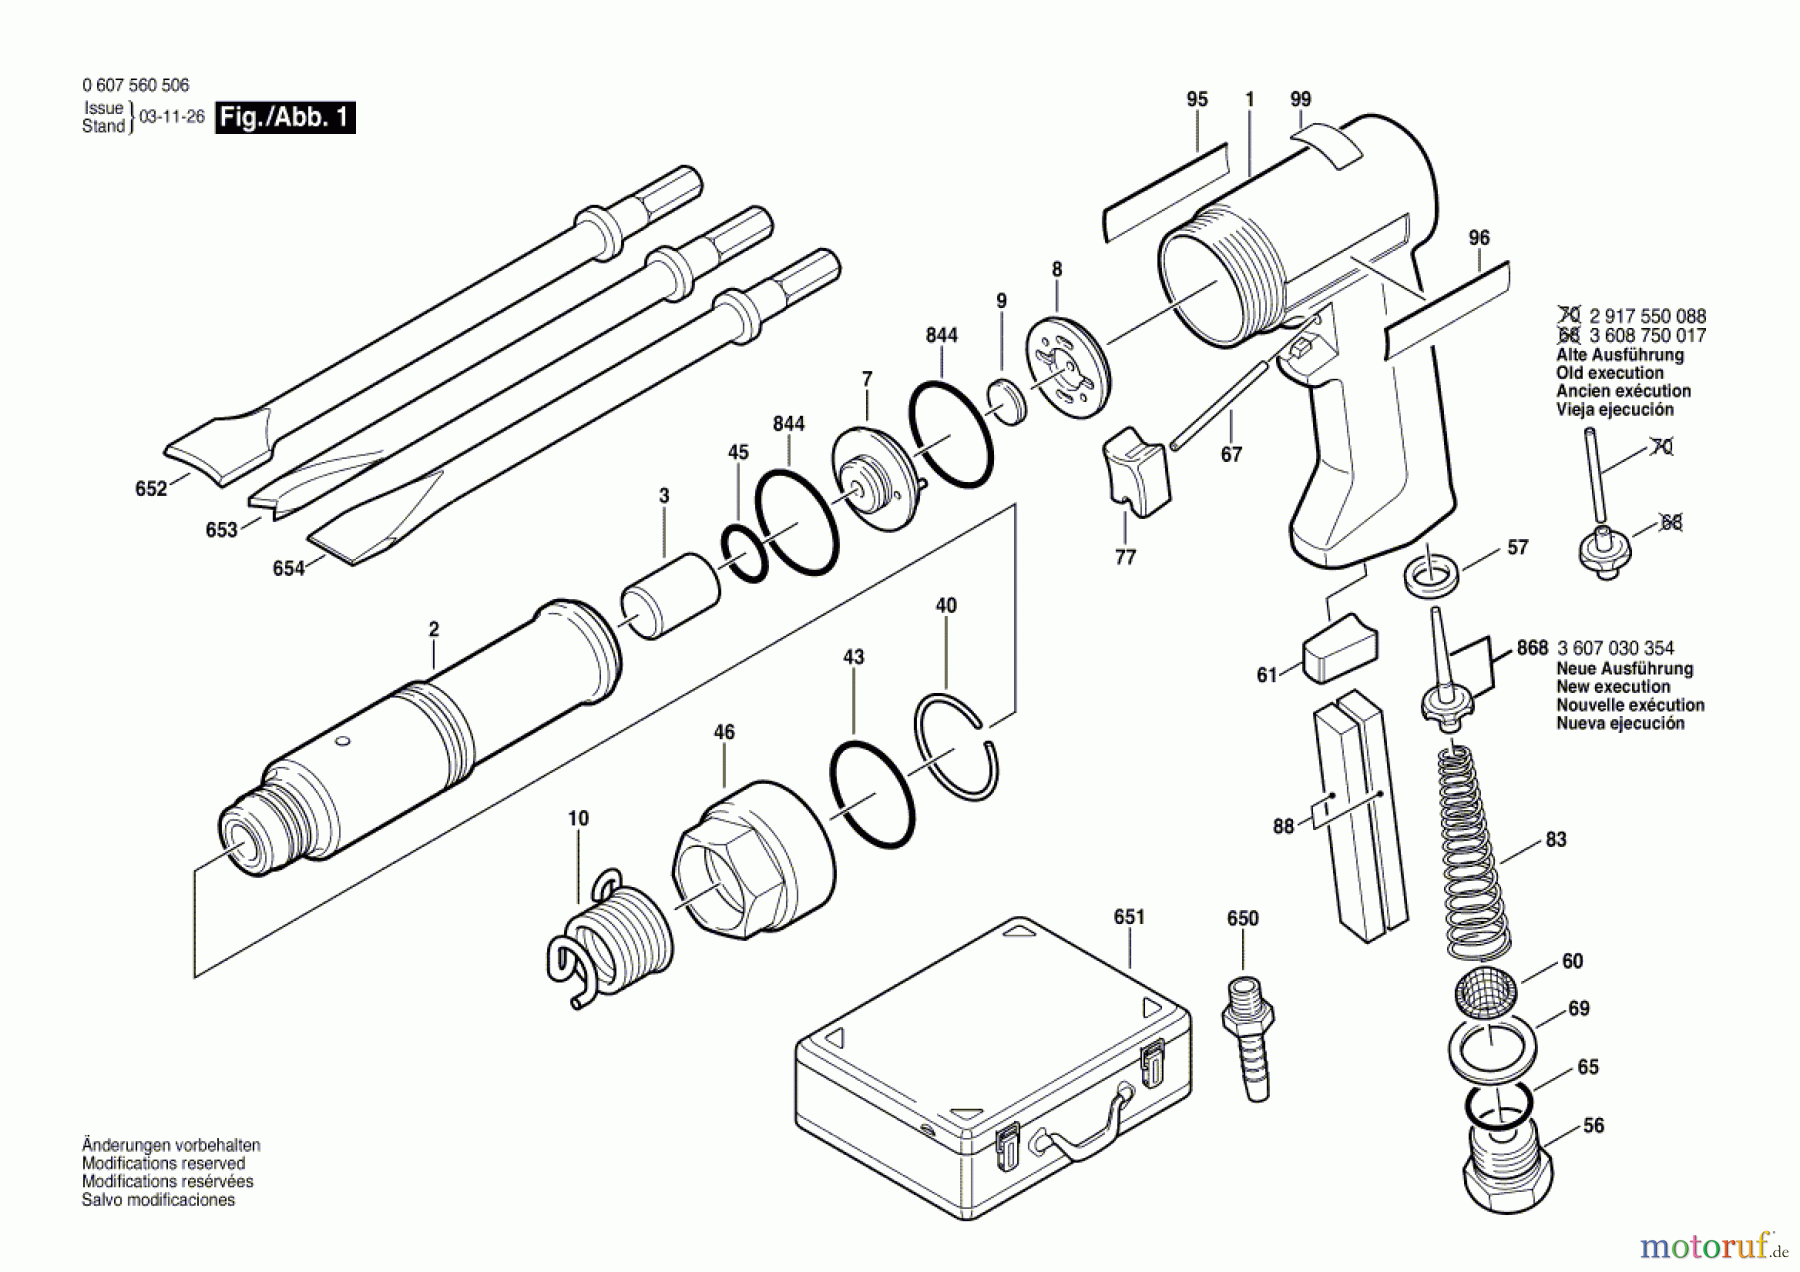  Bosch Werkzeug Pw-Meisselhammer-Set ---- Seite 1